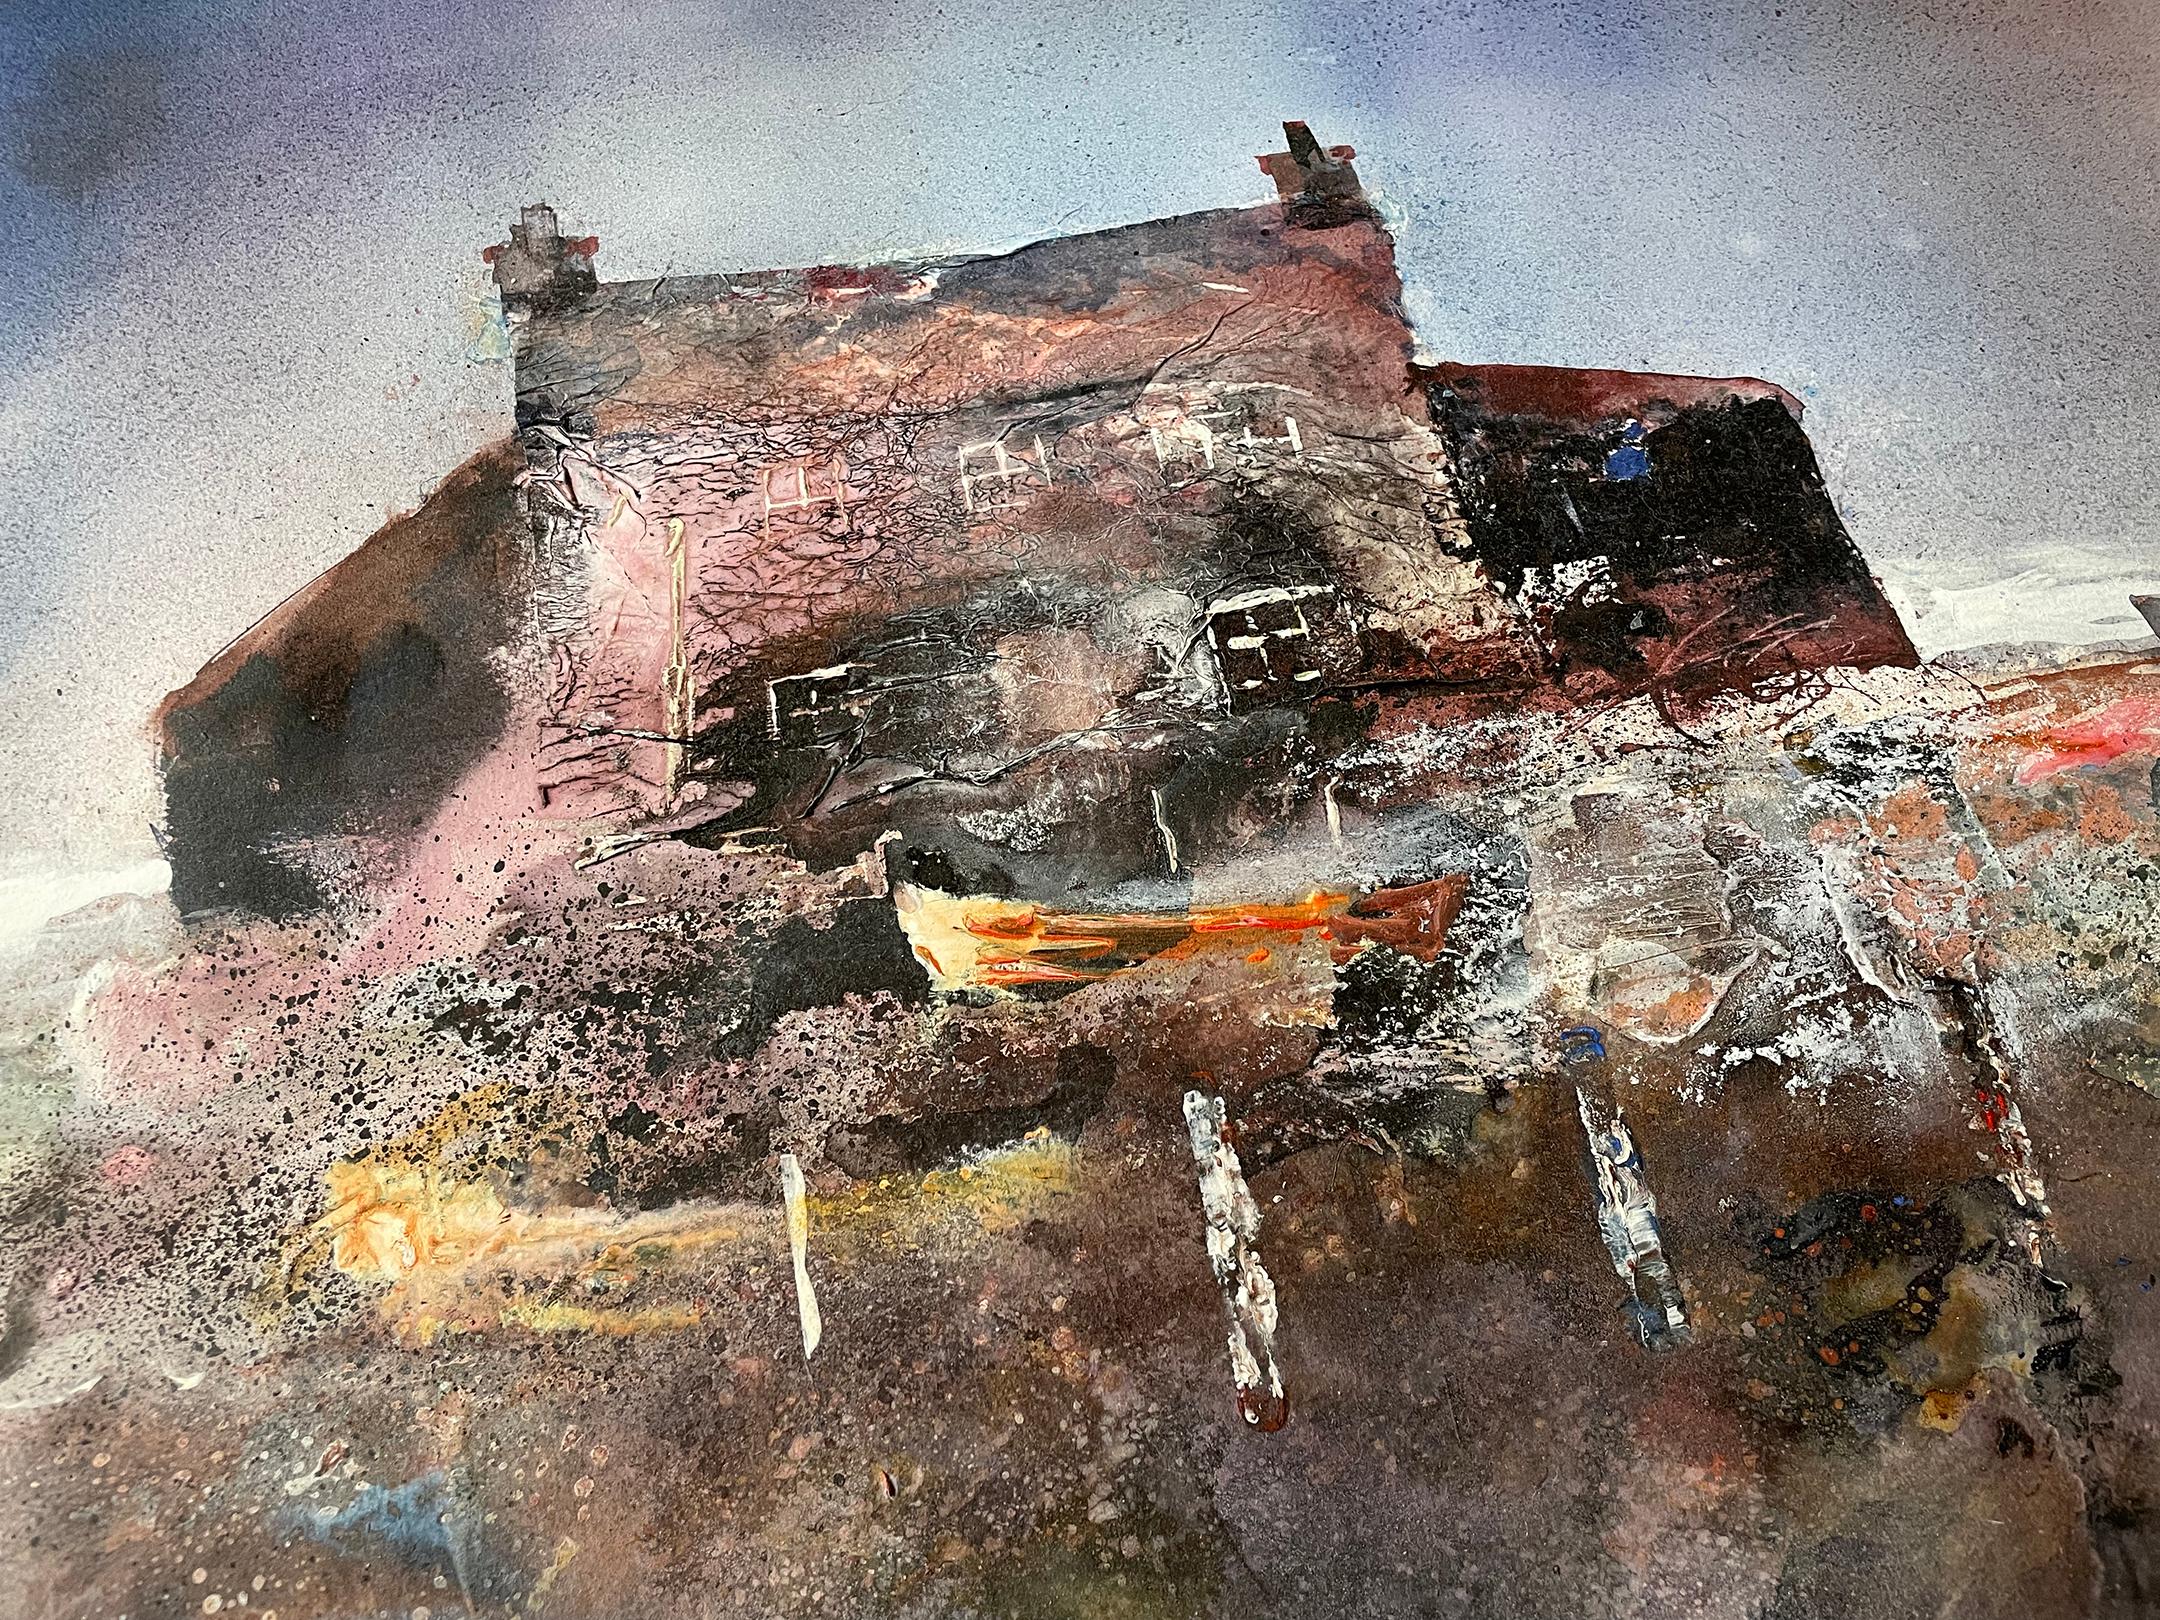 Maison solitaire au bord de la mer - Contemporain Painting par Colin Kent RI